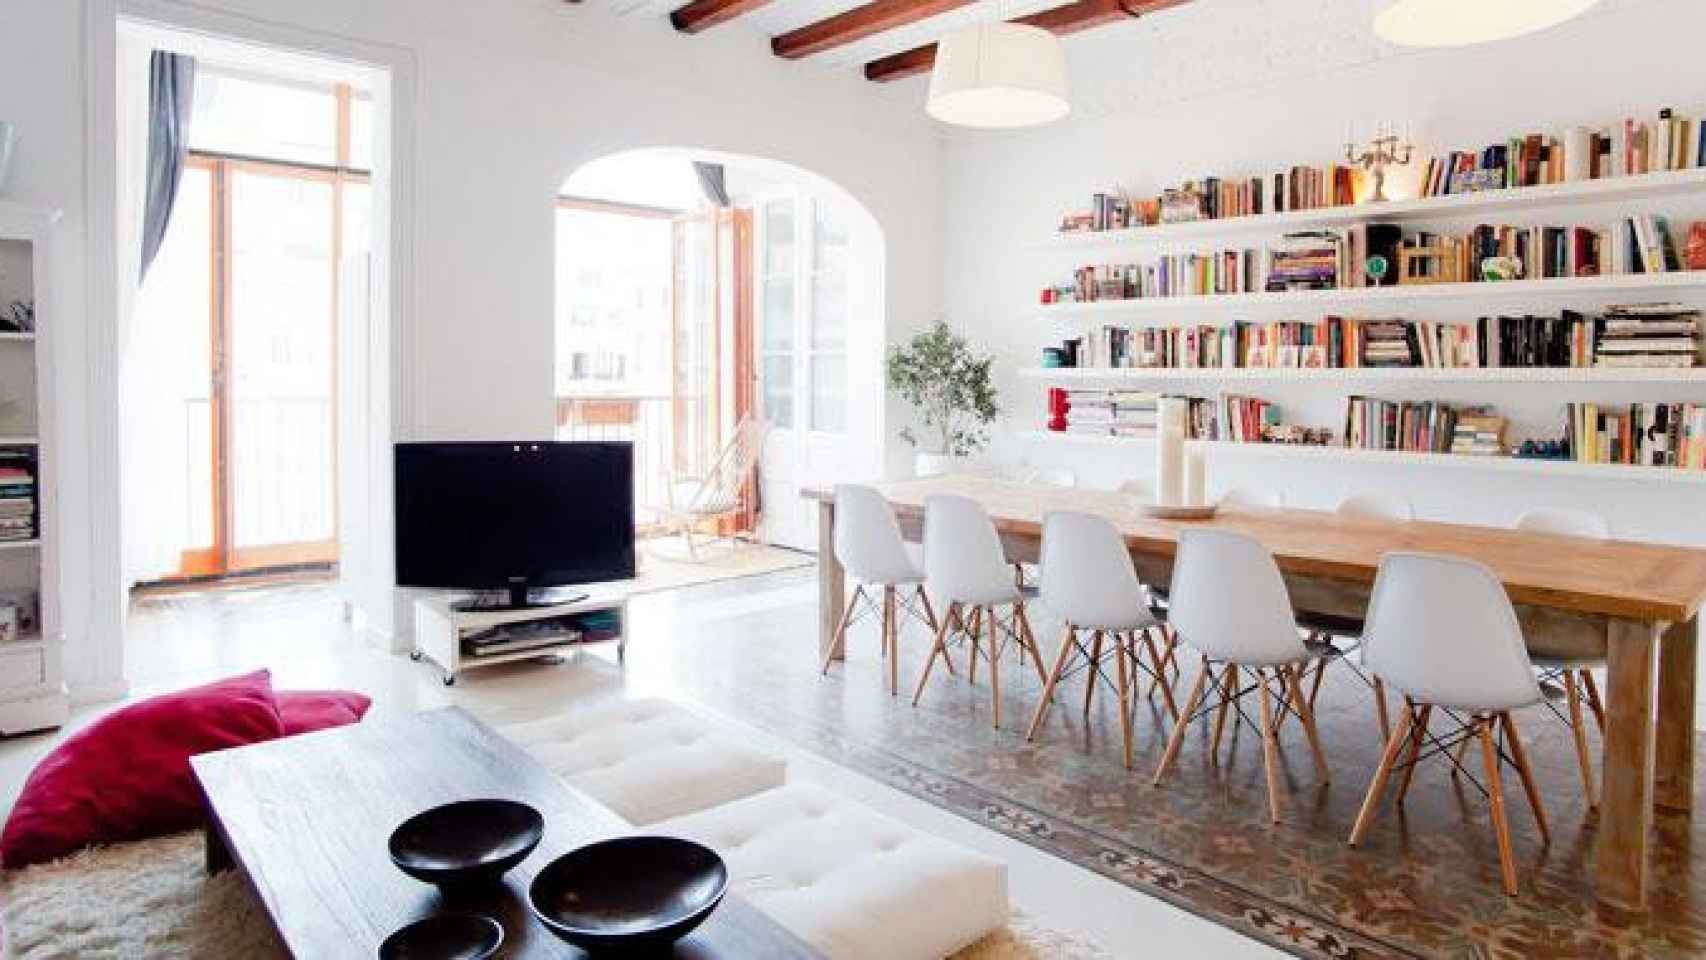 Imagen de uno de los hogares que anuncia Airbnb en Barcelona / CG